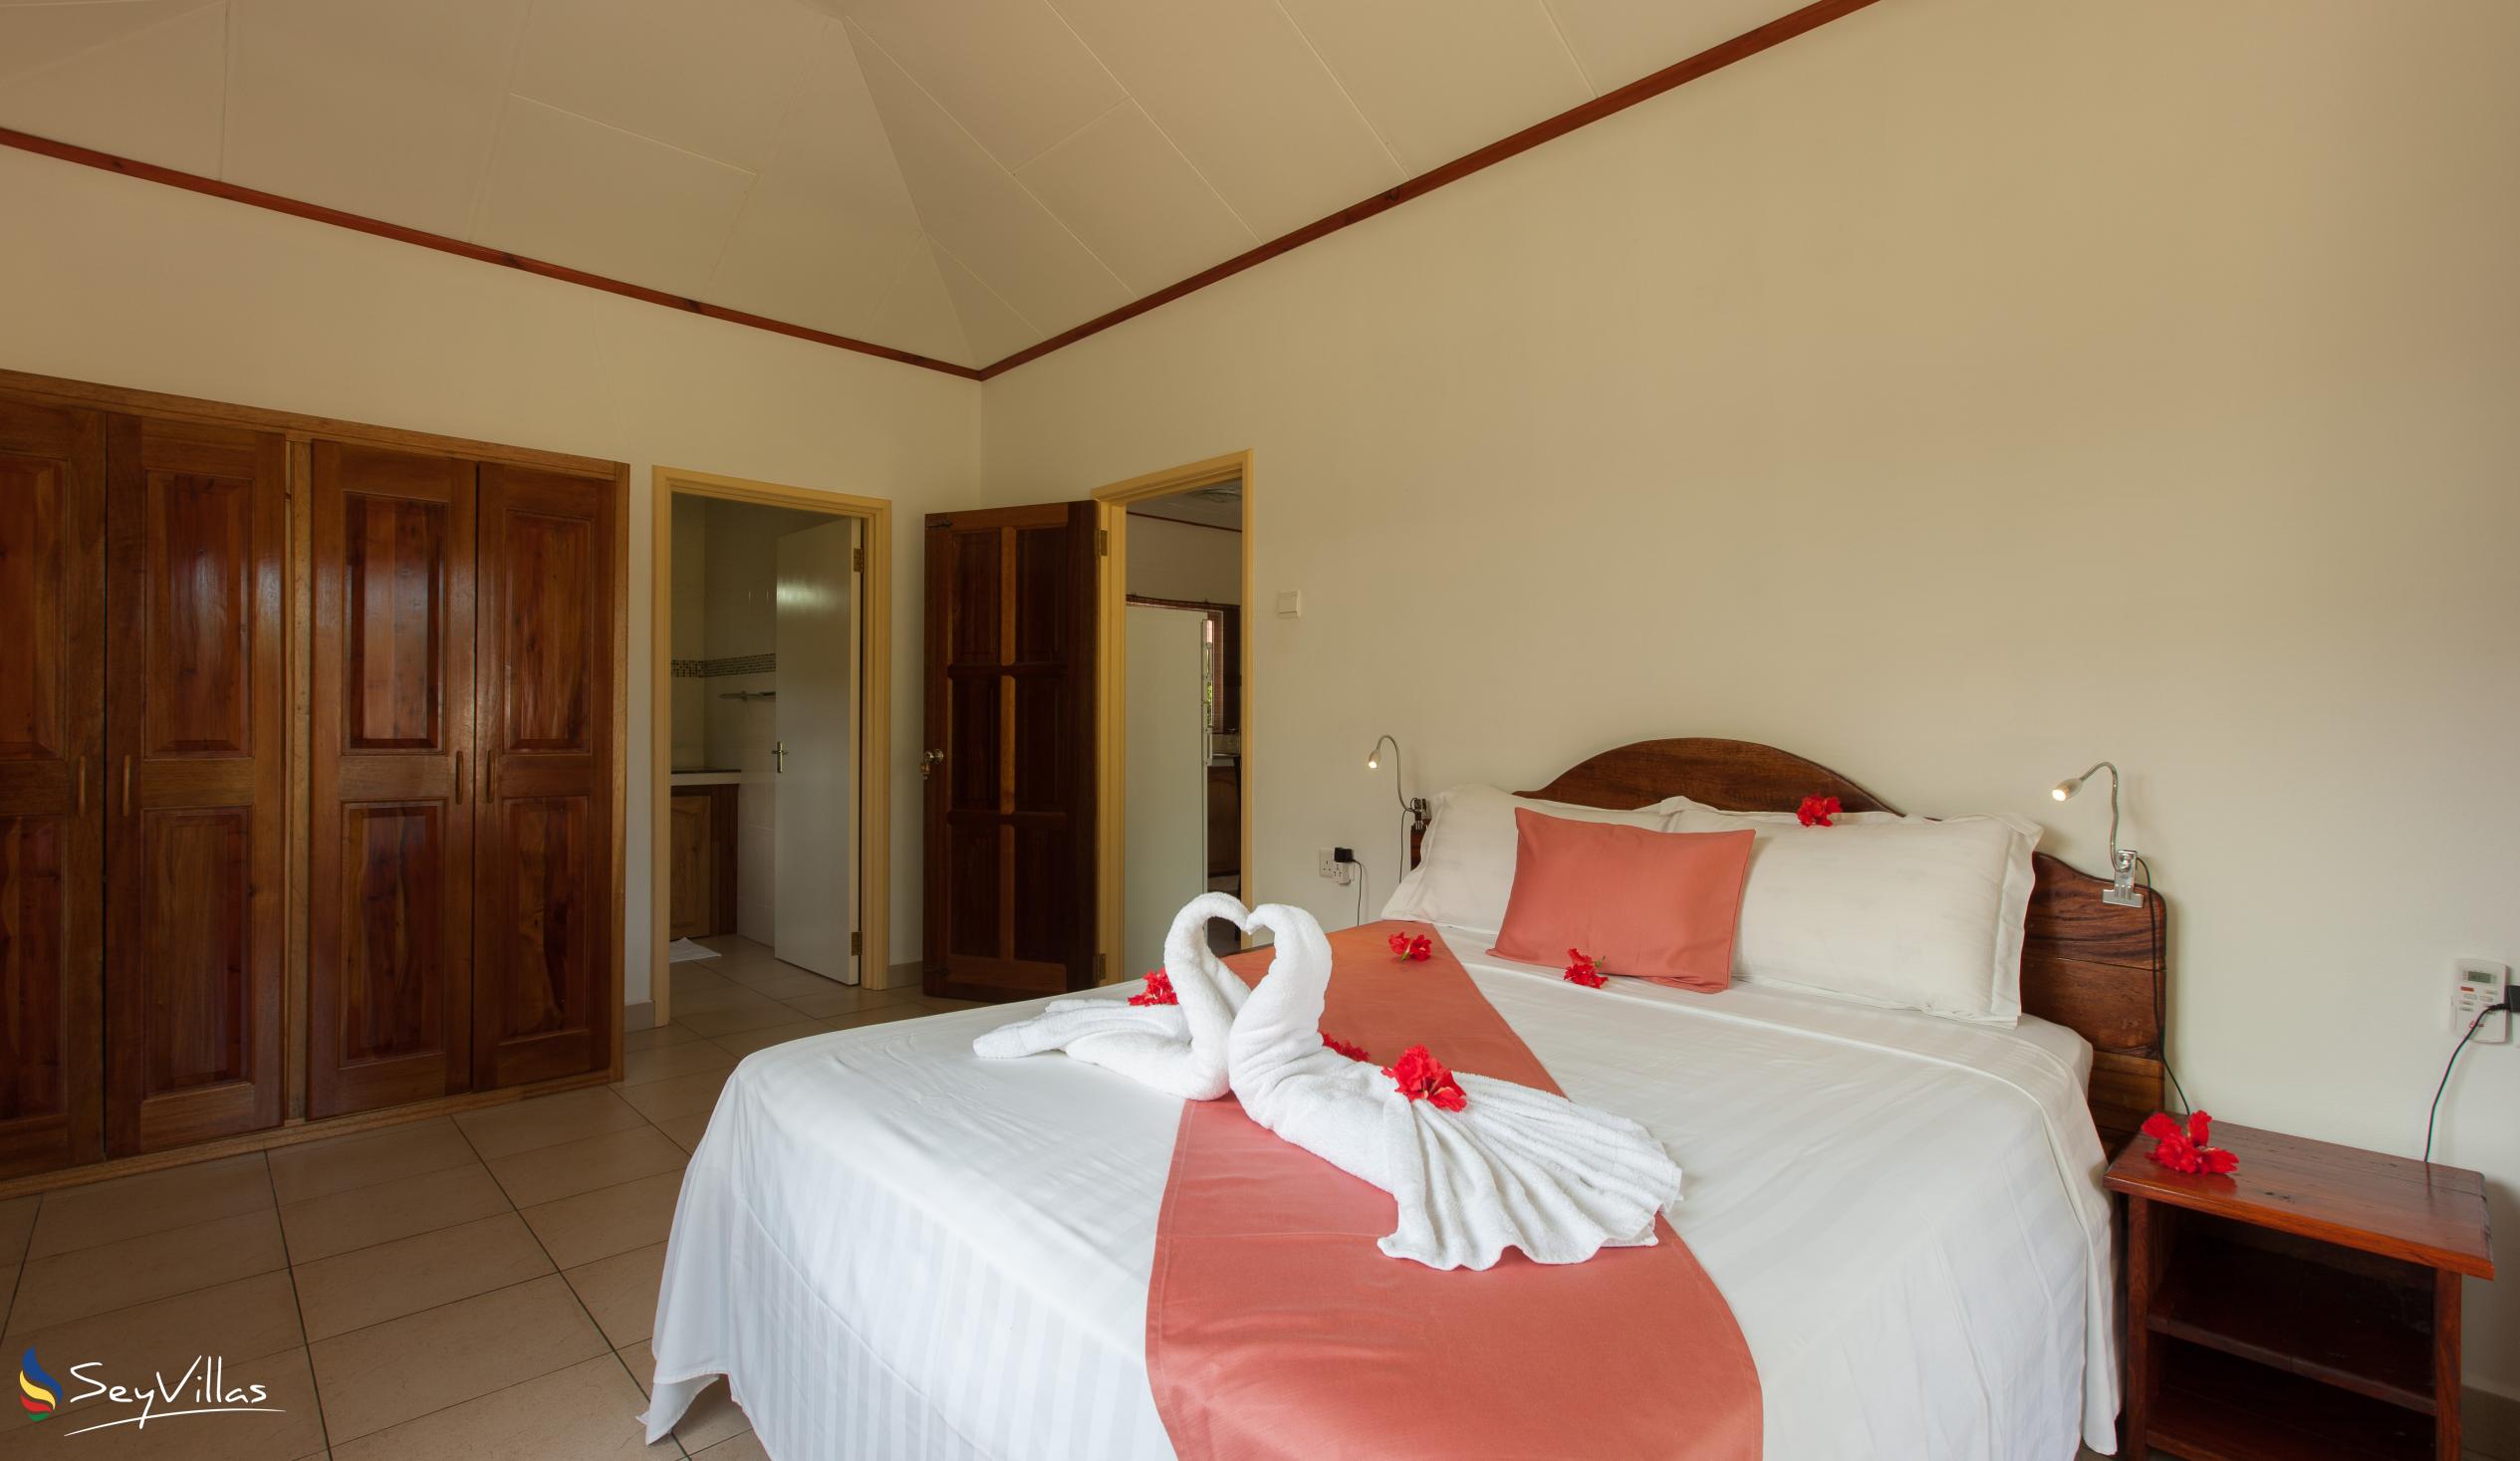 Foto 51: Hostellerie La Digue - Bungalow con 2 camere da letto - La Digue (Seychelles)